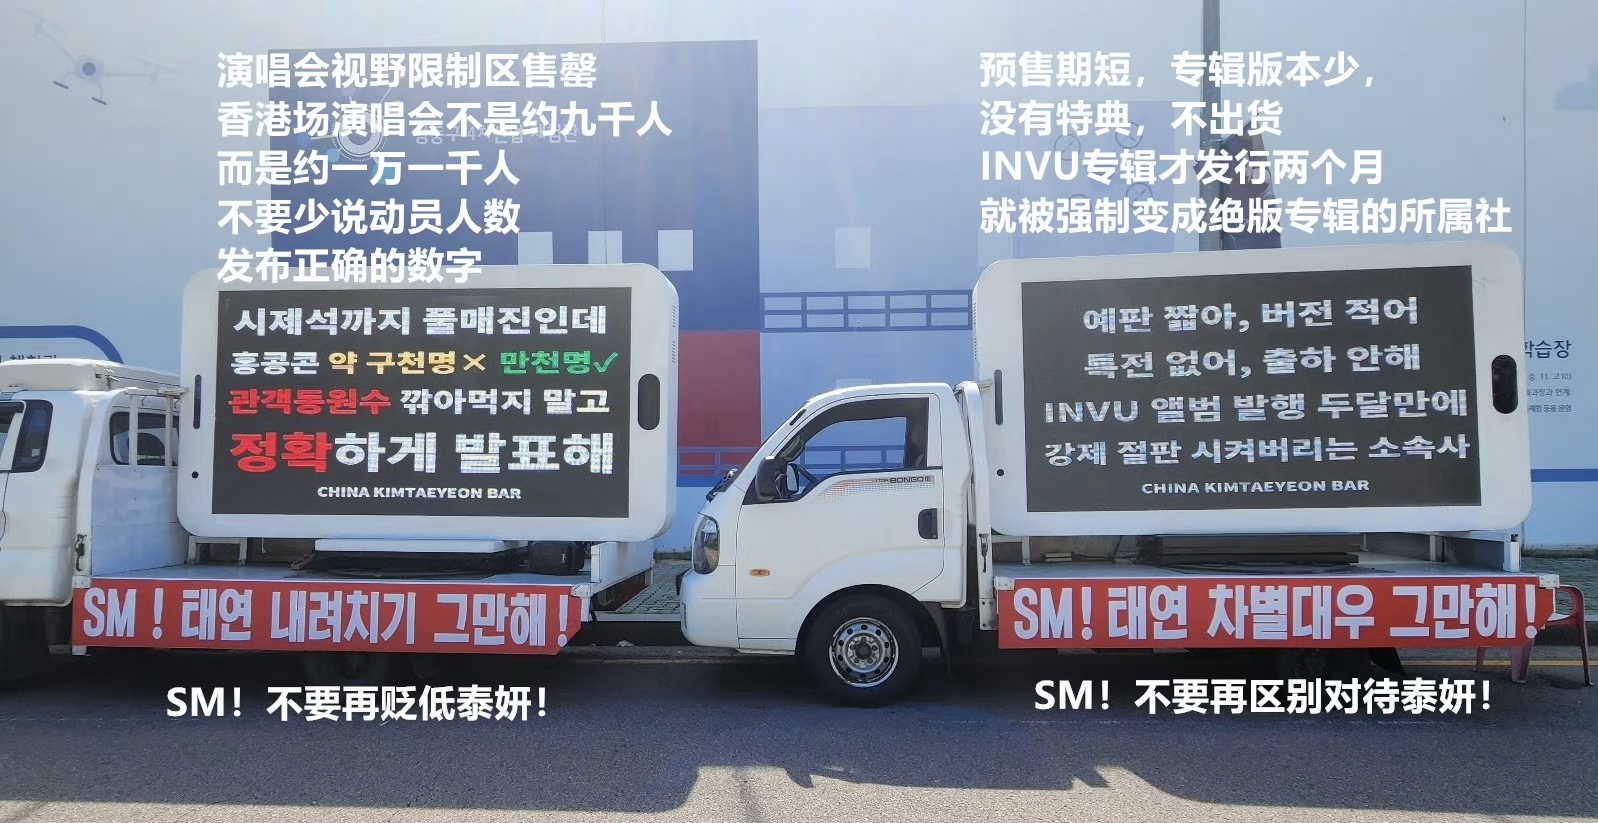 d‘strict团队的最新变形幻觉作品“WAVE”登陆韩国最大的高清户外广告屏幕_哔哩哔哩_bilibili